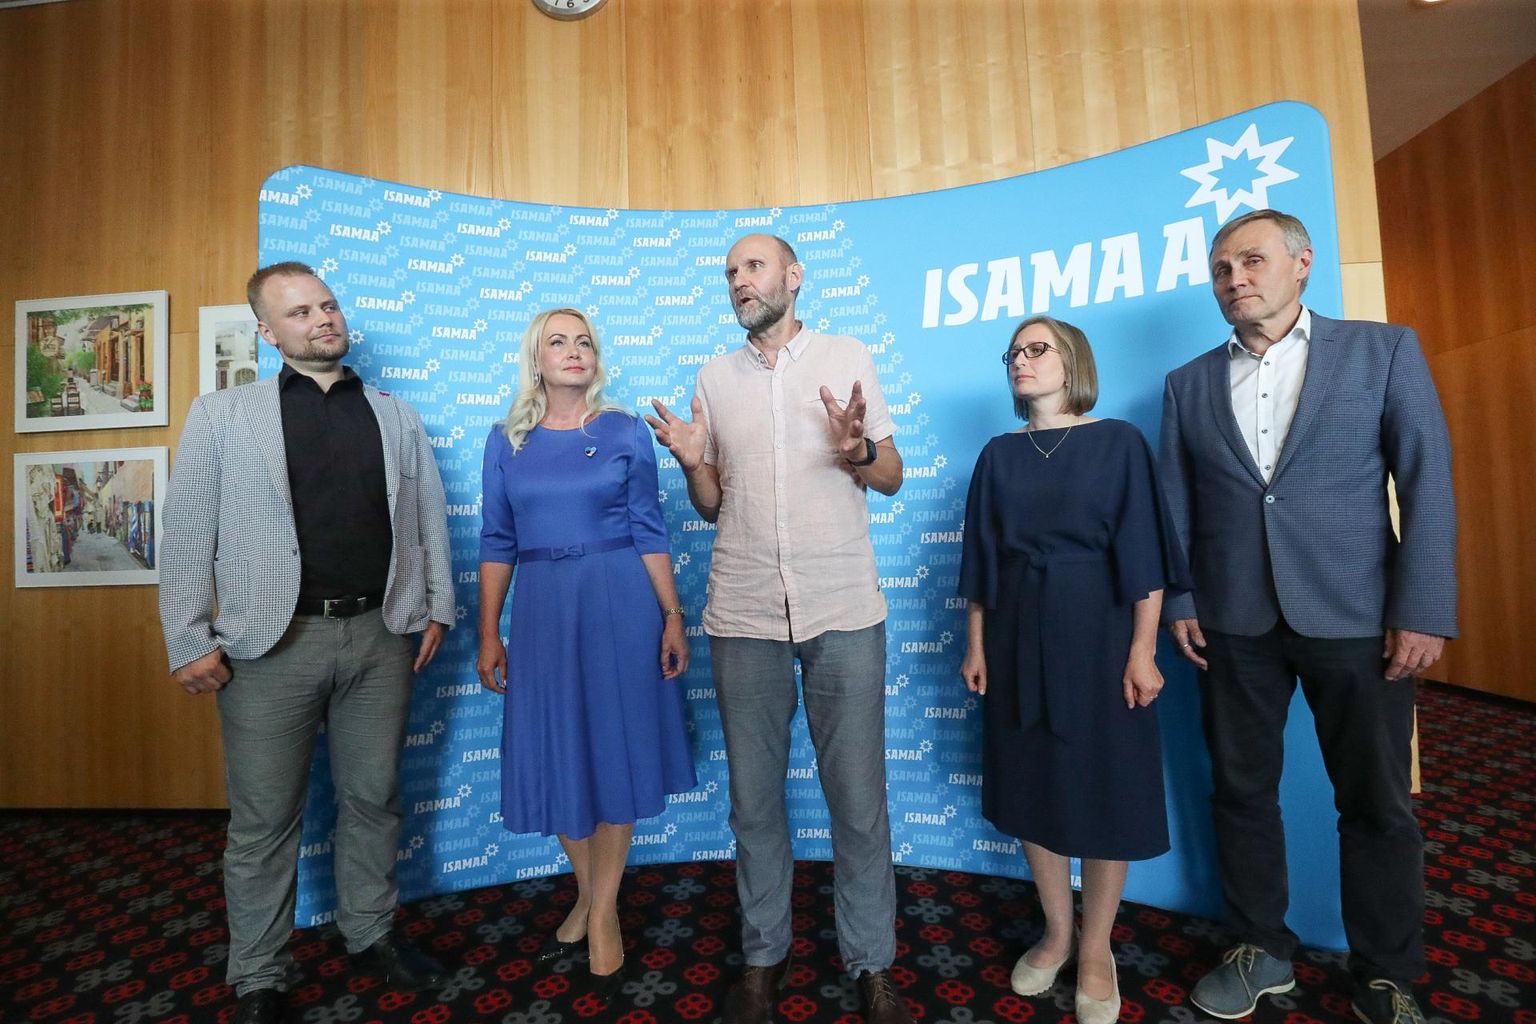 Ministerial candidates of Isamaa. Semeador Helir-Valdor (center) presents: Kristjan Järvan, Riina Solman, Lea Danilson-Järg, Tõnis Lukas.